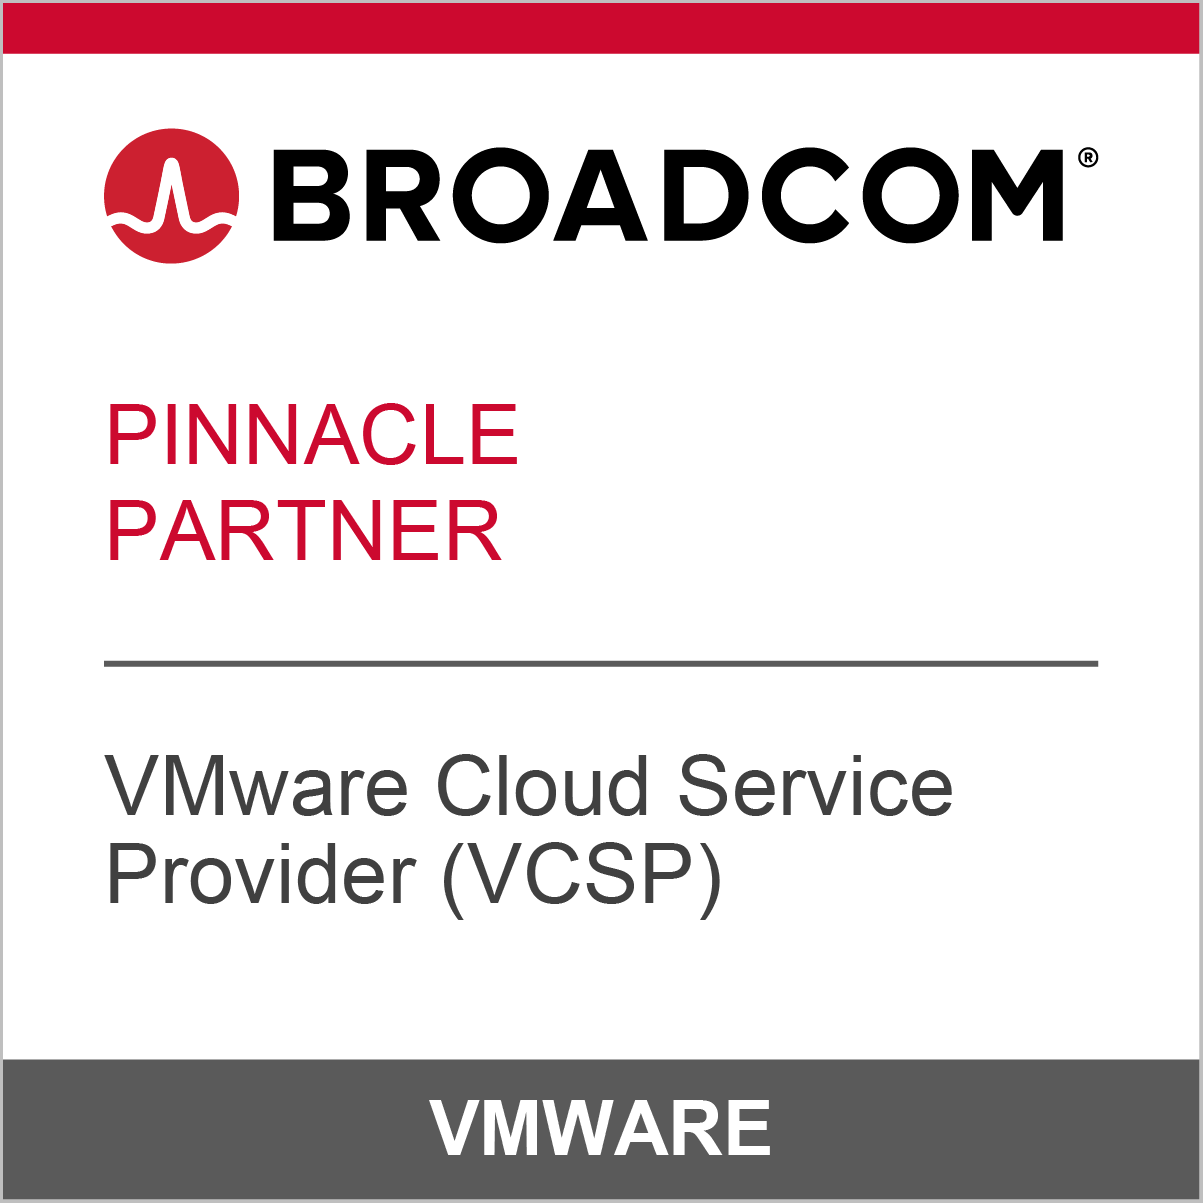 Rackspace Broadcom Pinnacle Partner